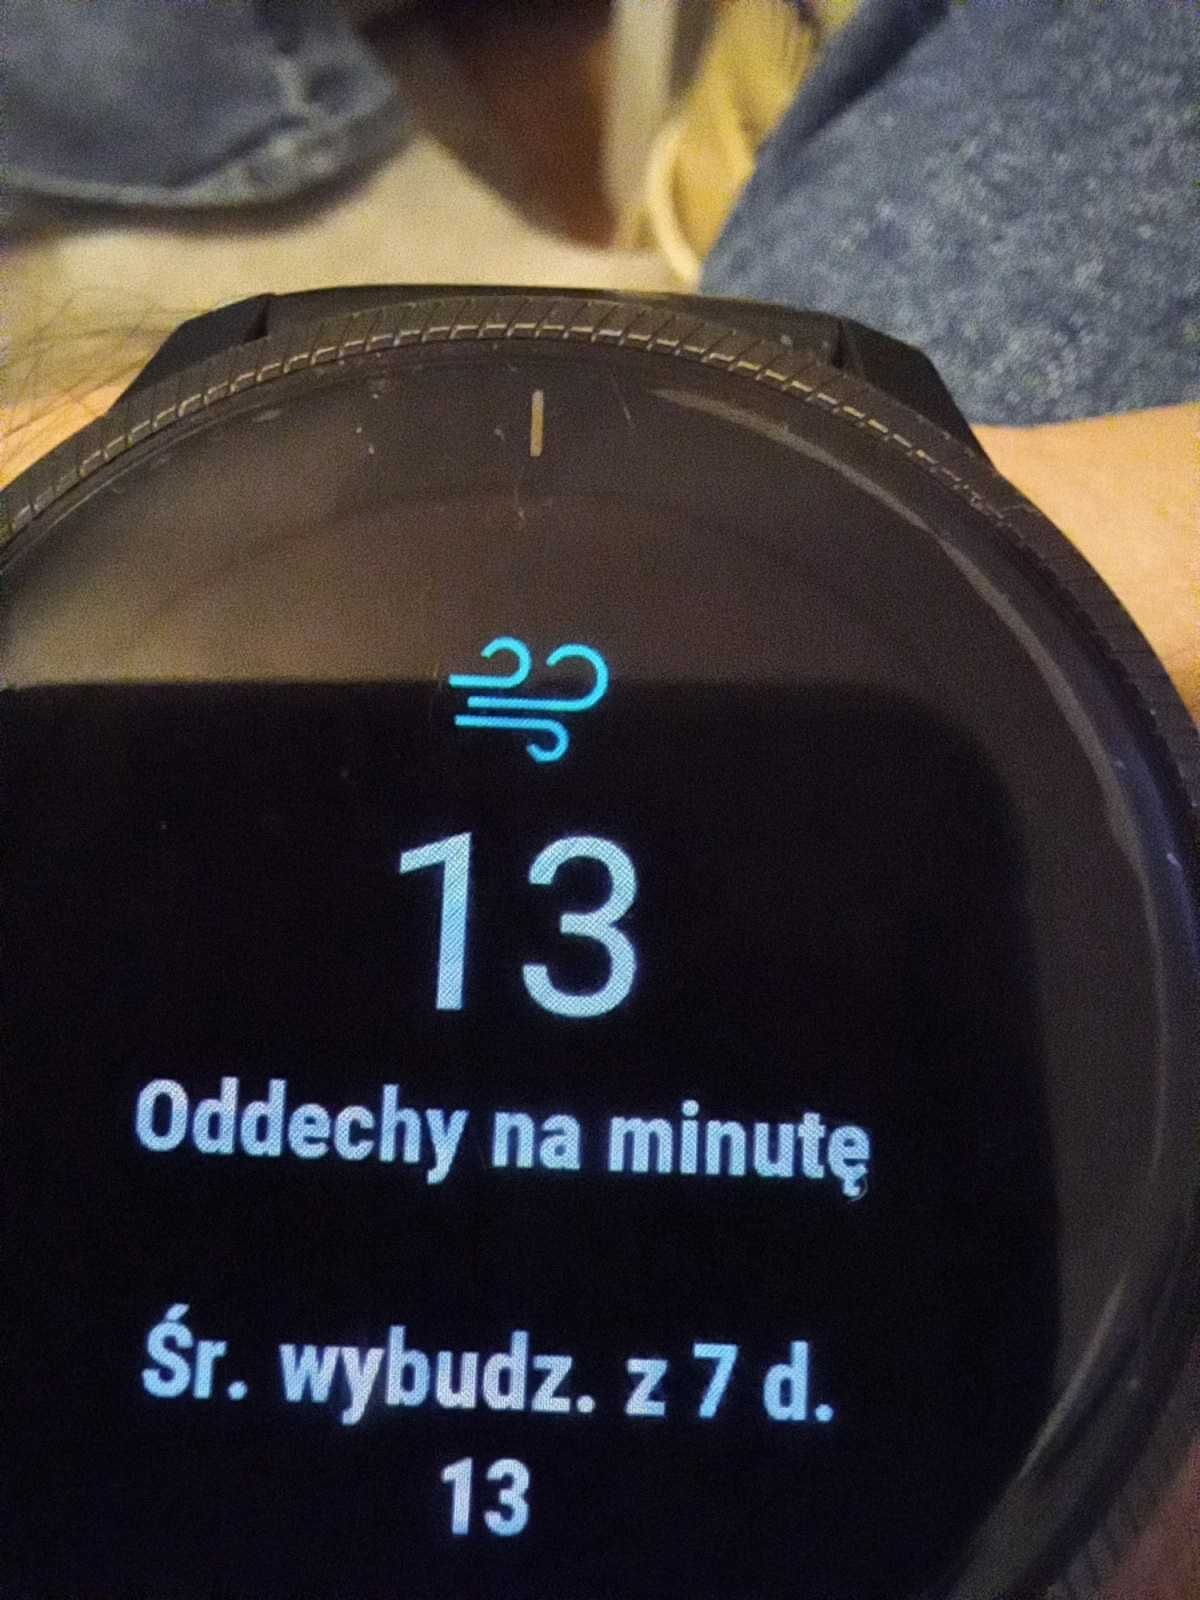 Smartwatch Garmin venu